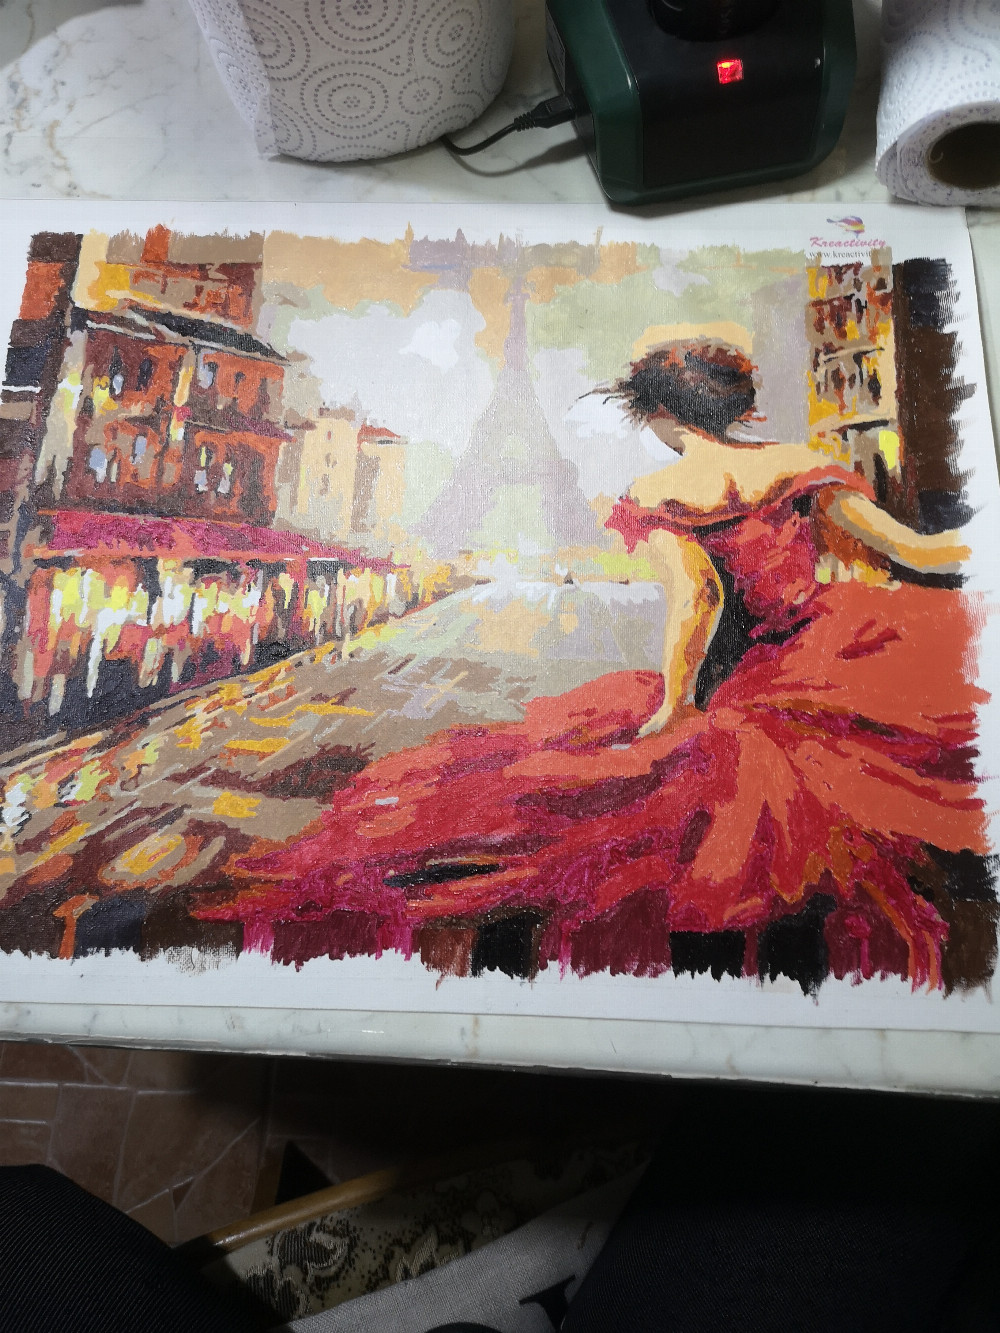   Piros ruhás nő Párizsban festés számok alapján kreatív készlet keret nélkül
